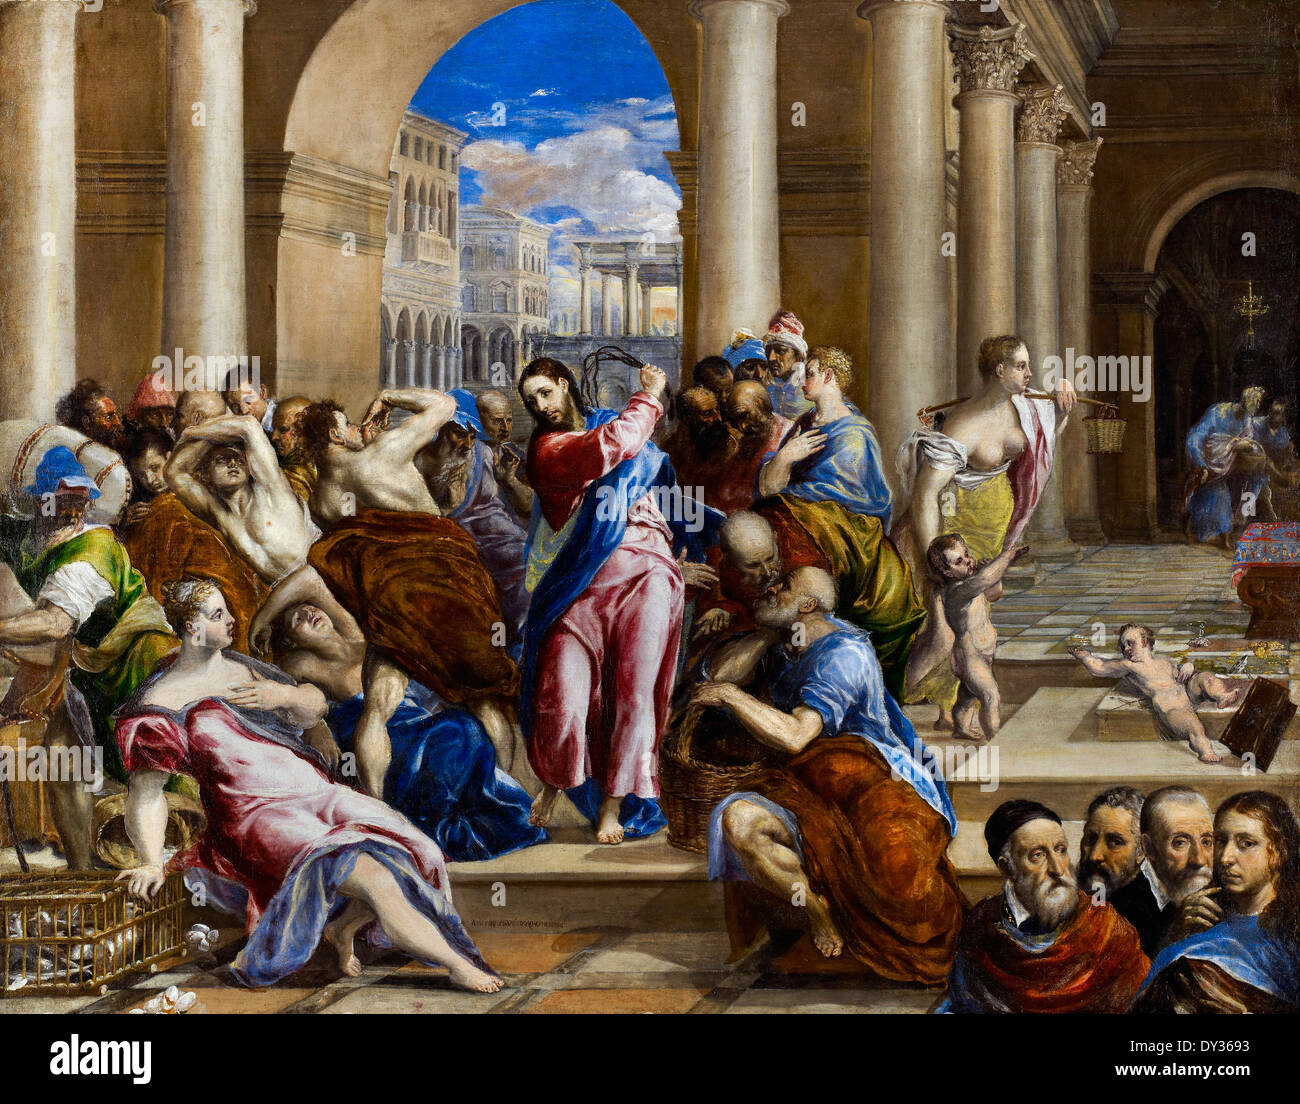 El Greco, Cristo conduce los cambiadores de dinero del Templo. Circa 1570. Óleo sobre lienzo. Minneapolis Institute of Arts, ESTADOS UNIDOS. Foto de stock